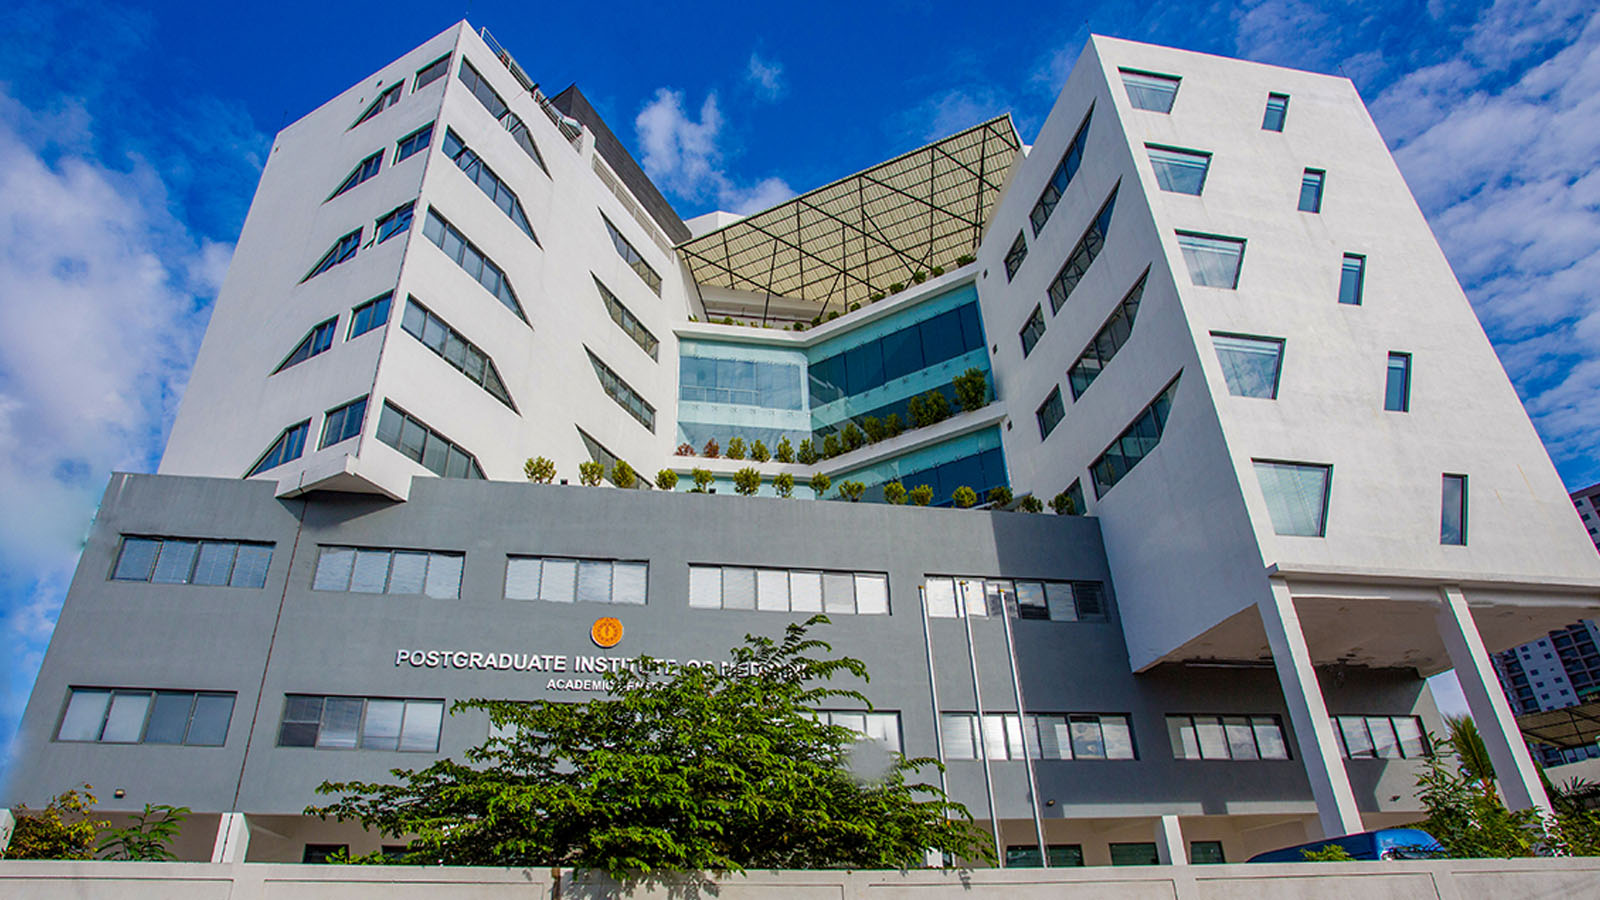 Postgraduate Institute of Medicine (PGIM)